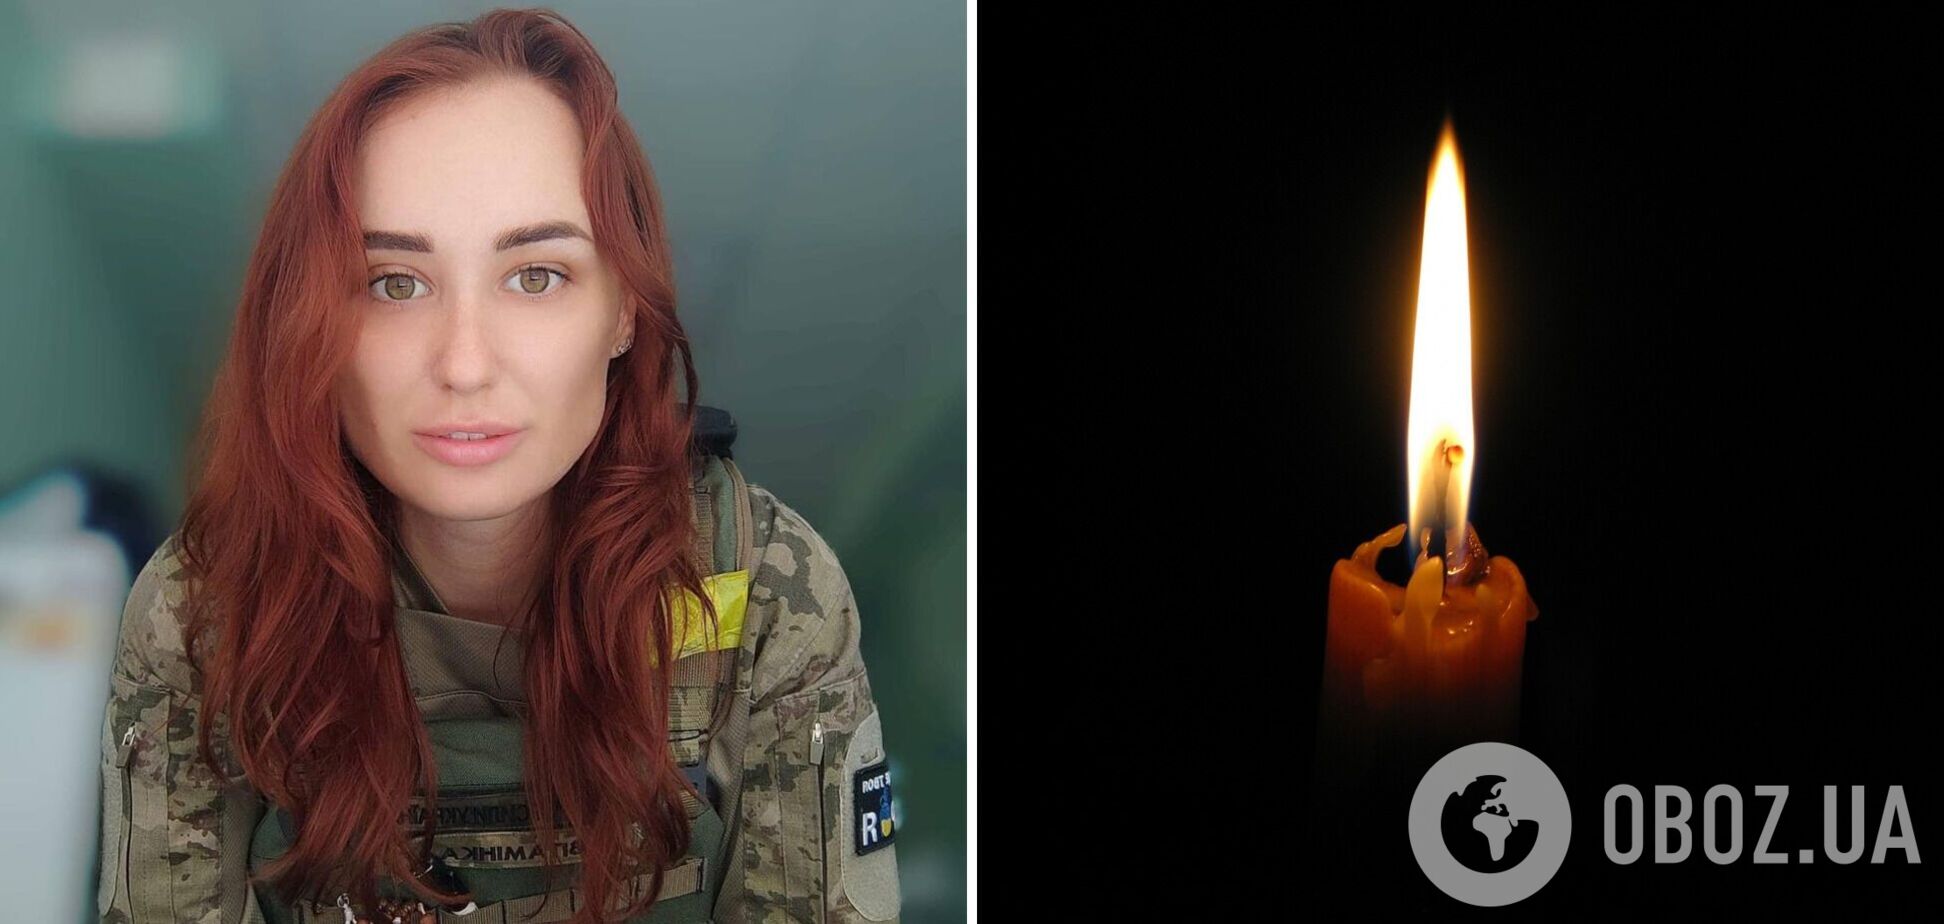 Рятувала життя, ризикуючи своїм: на фронті загинула бойова медикиня зі Львова Наталія Депа. Фото